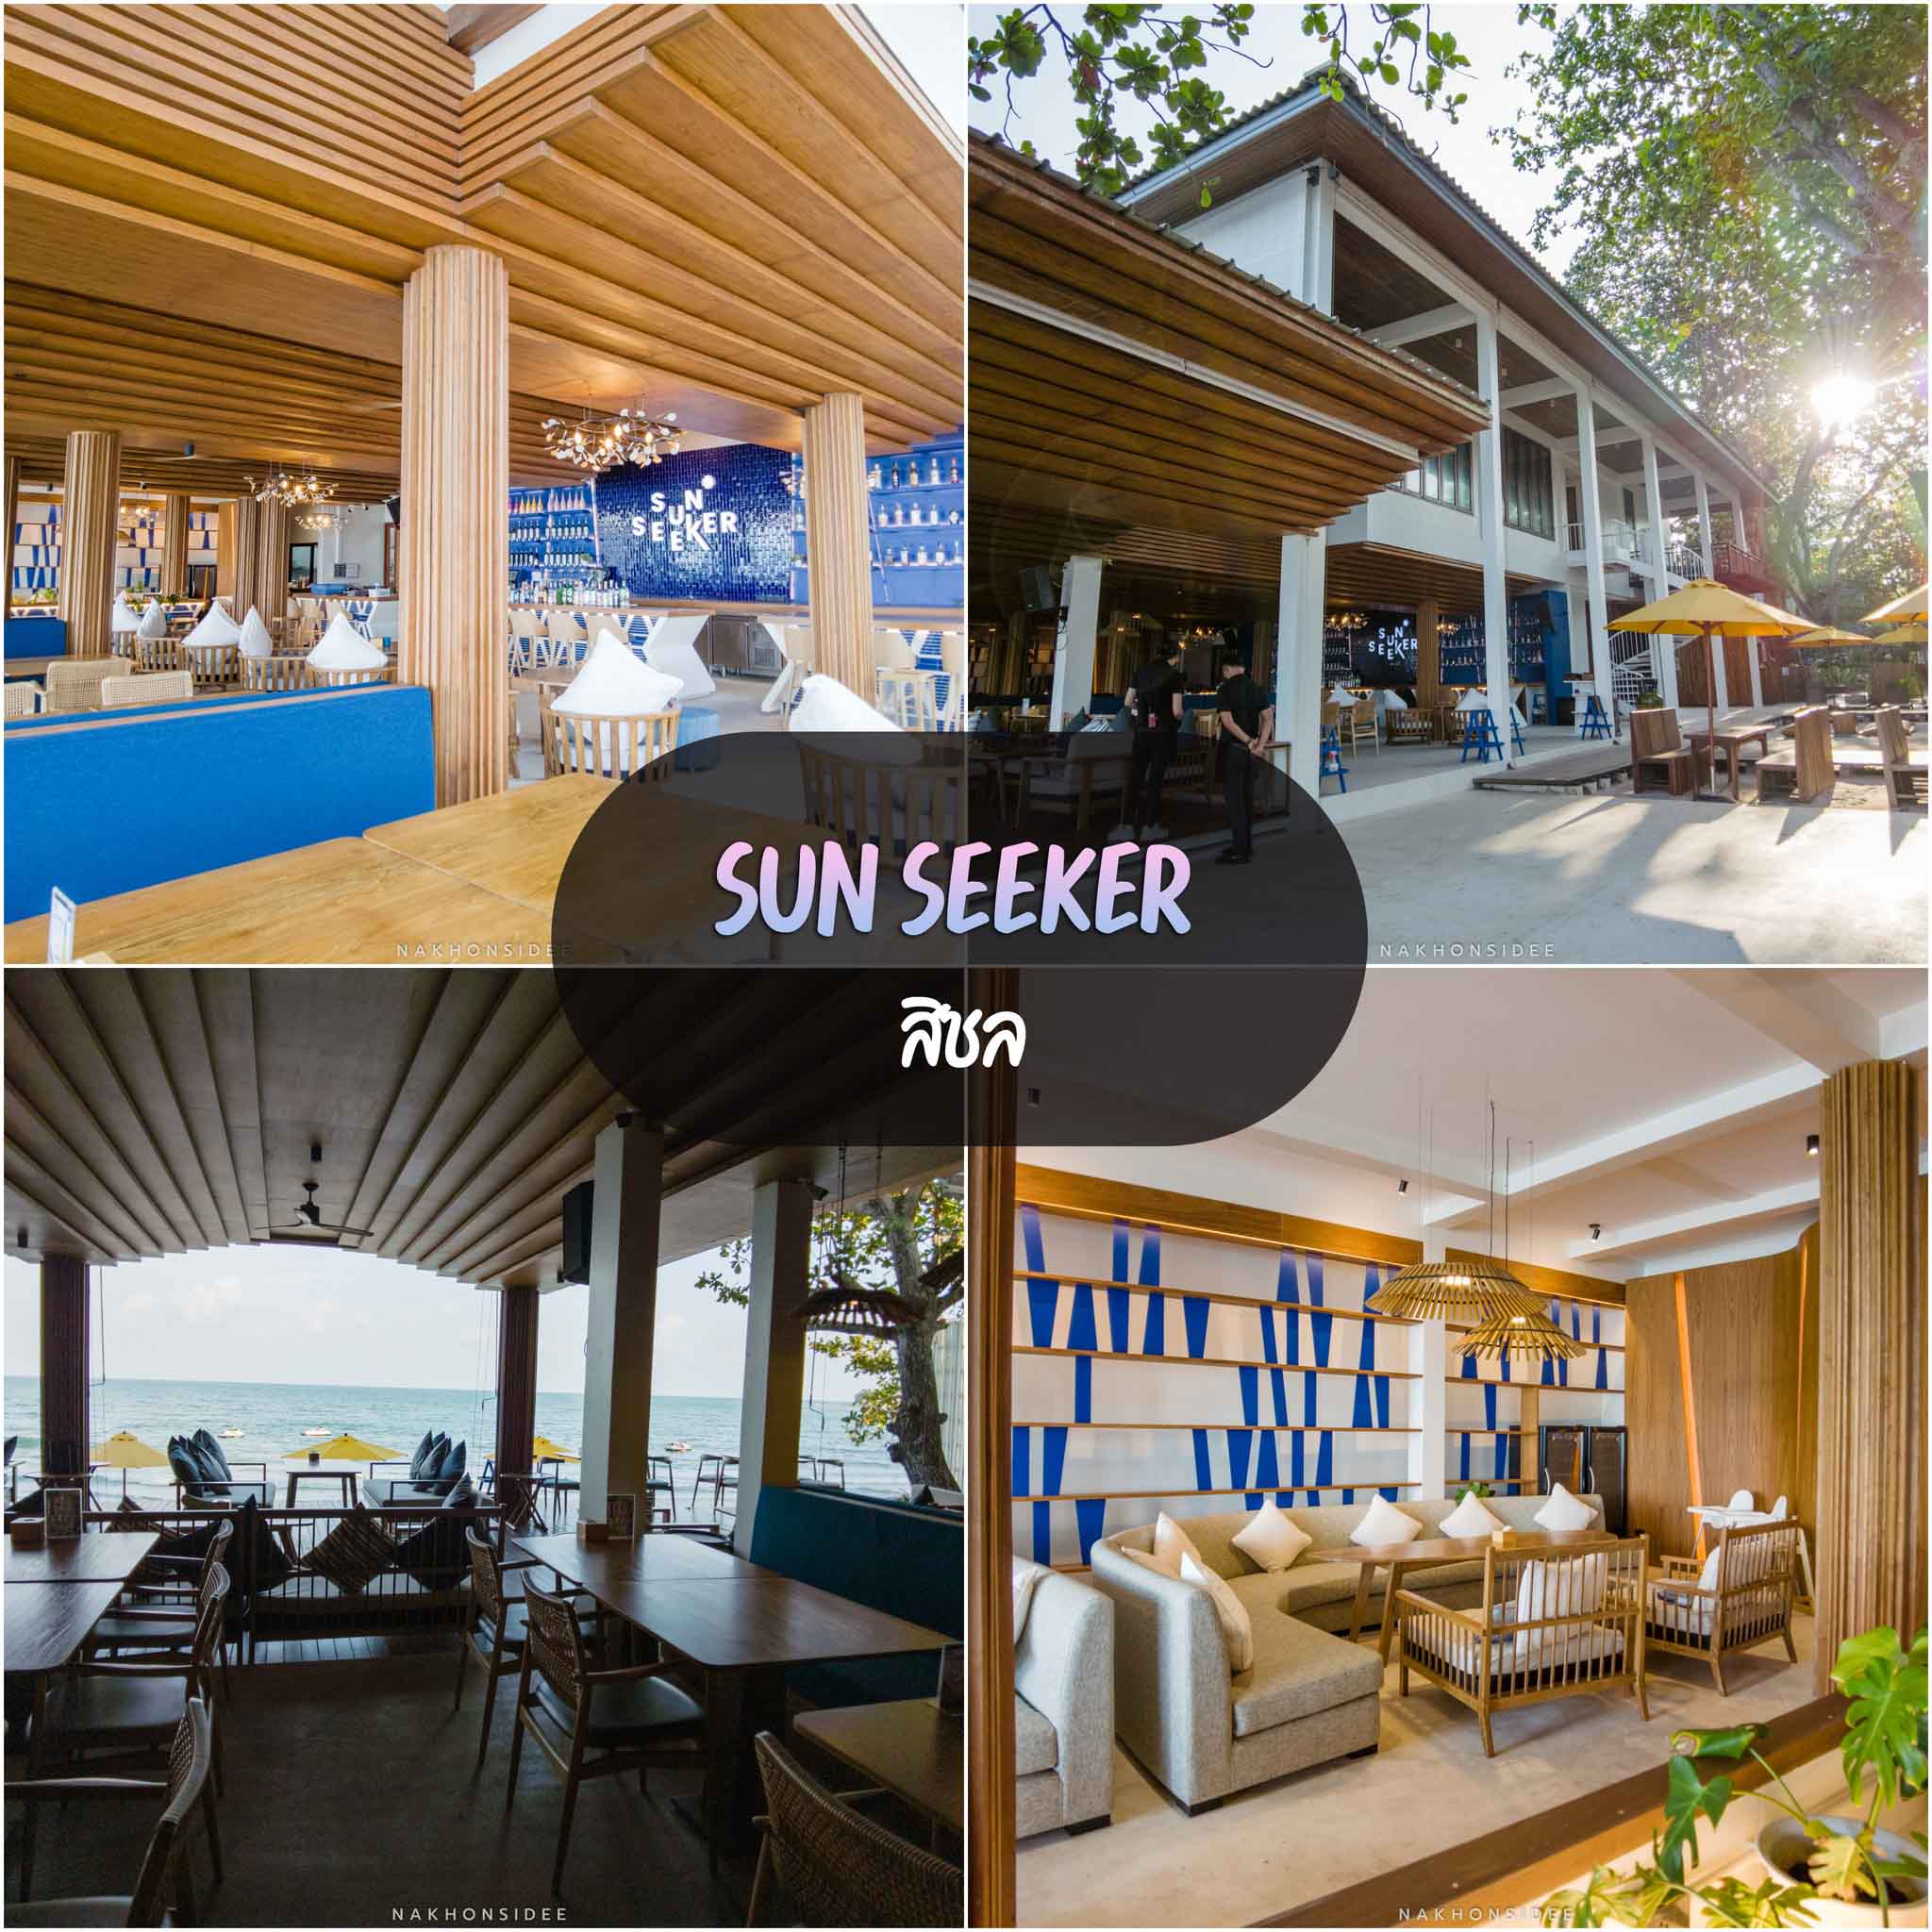 Sun-Seeker -คาเฟ่ร้านอาหารเปิดใหม่-หน้าโรงแรมสิชลคาบาน่าครับ
 คาเฟ่,นครศรีธรรมราช,2021,จุดกิน,ของกิน,วิวหลักล้าน,ร้านกาแฟ